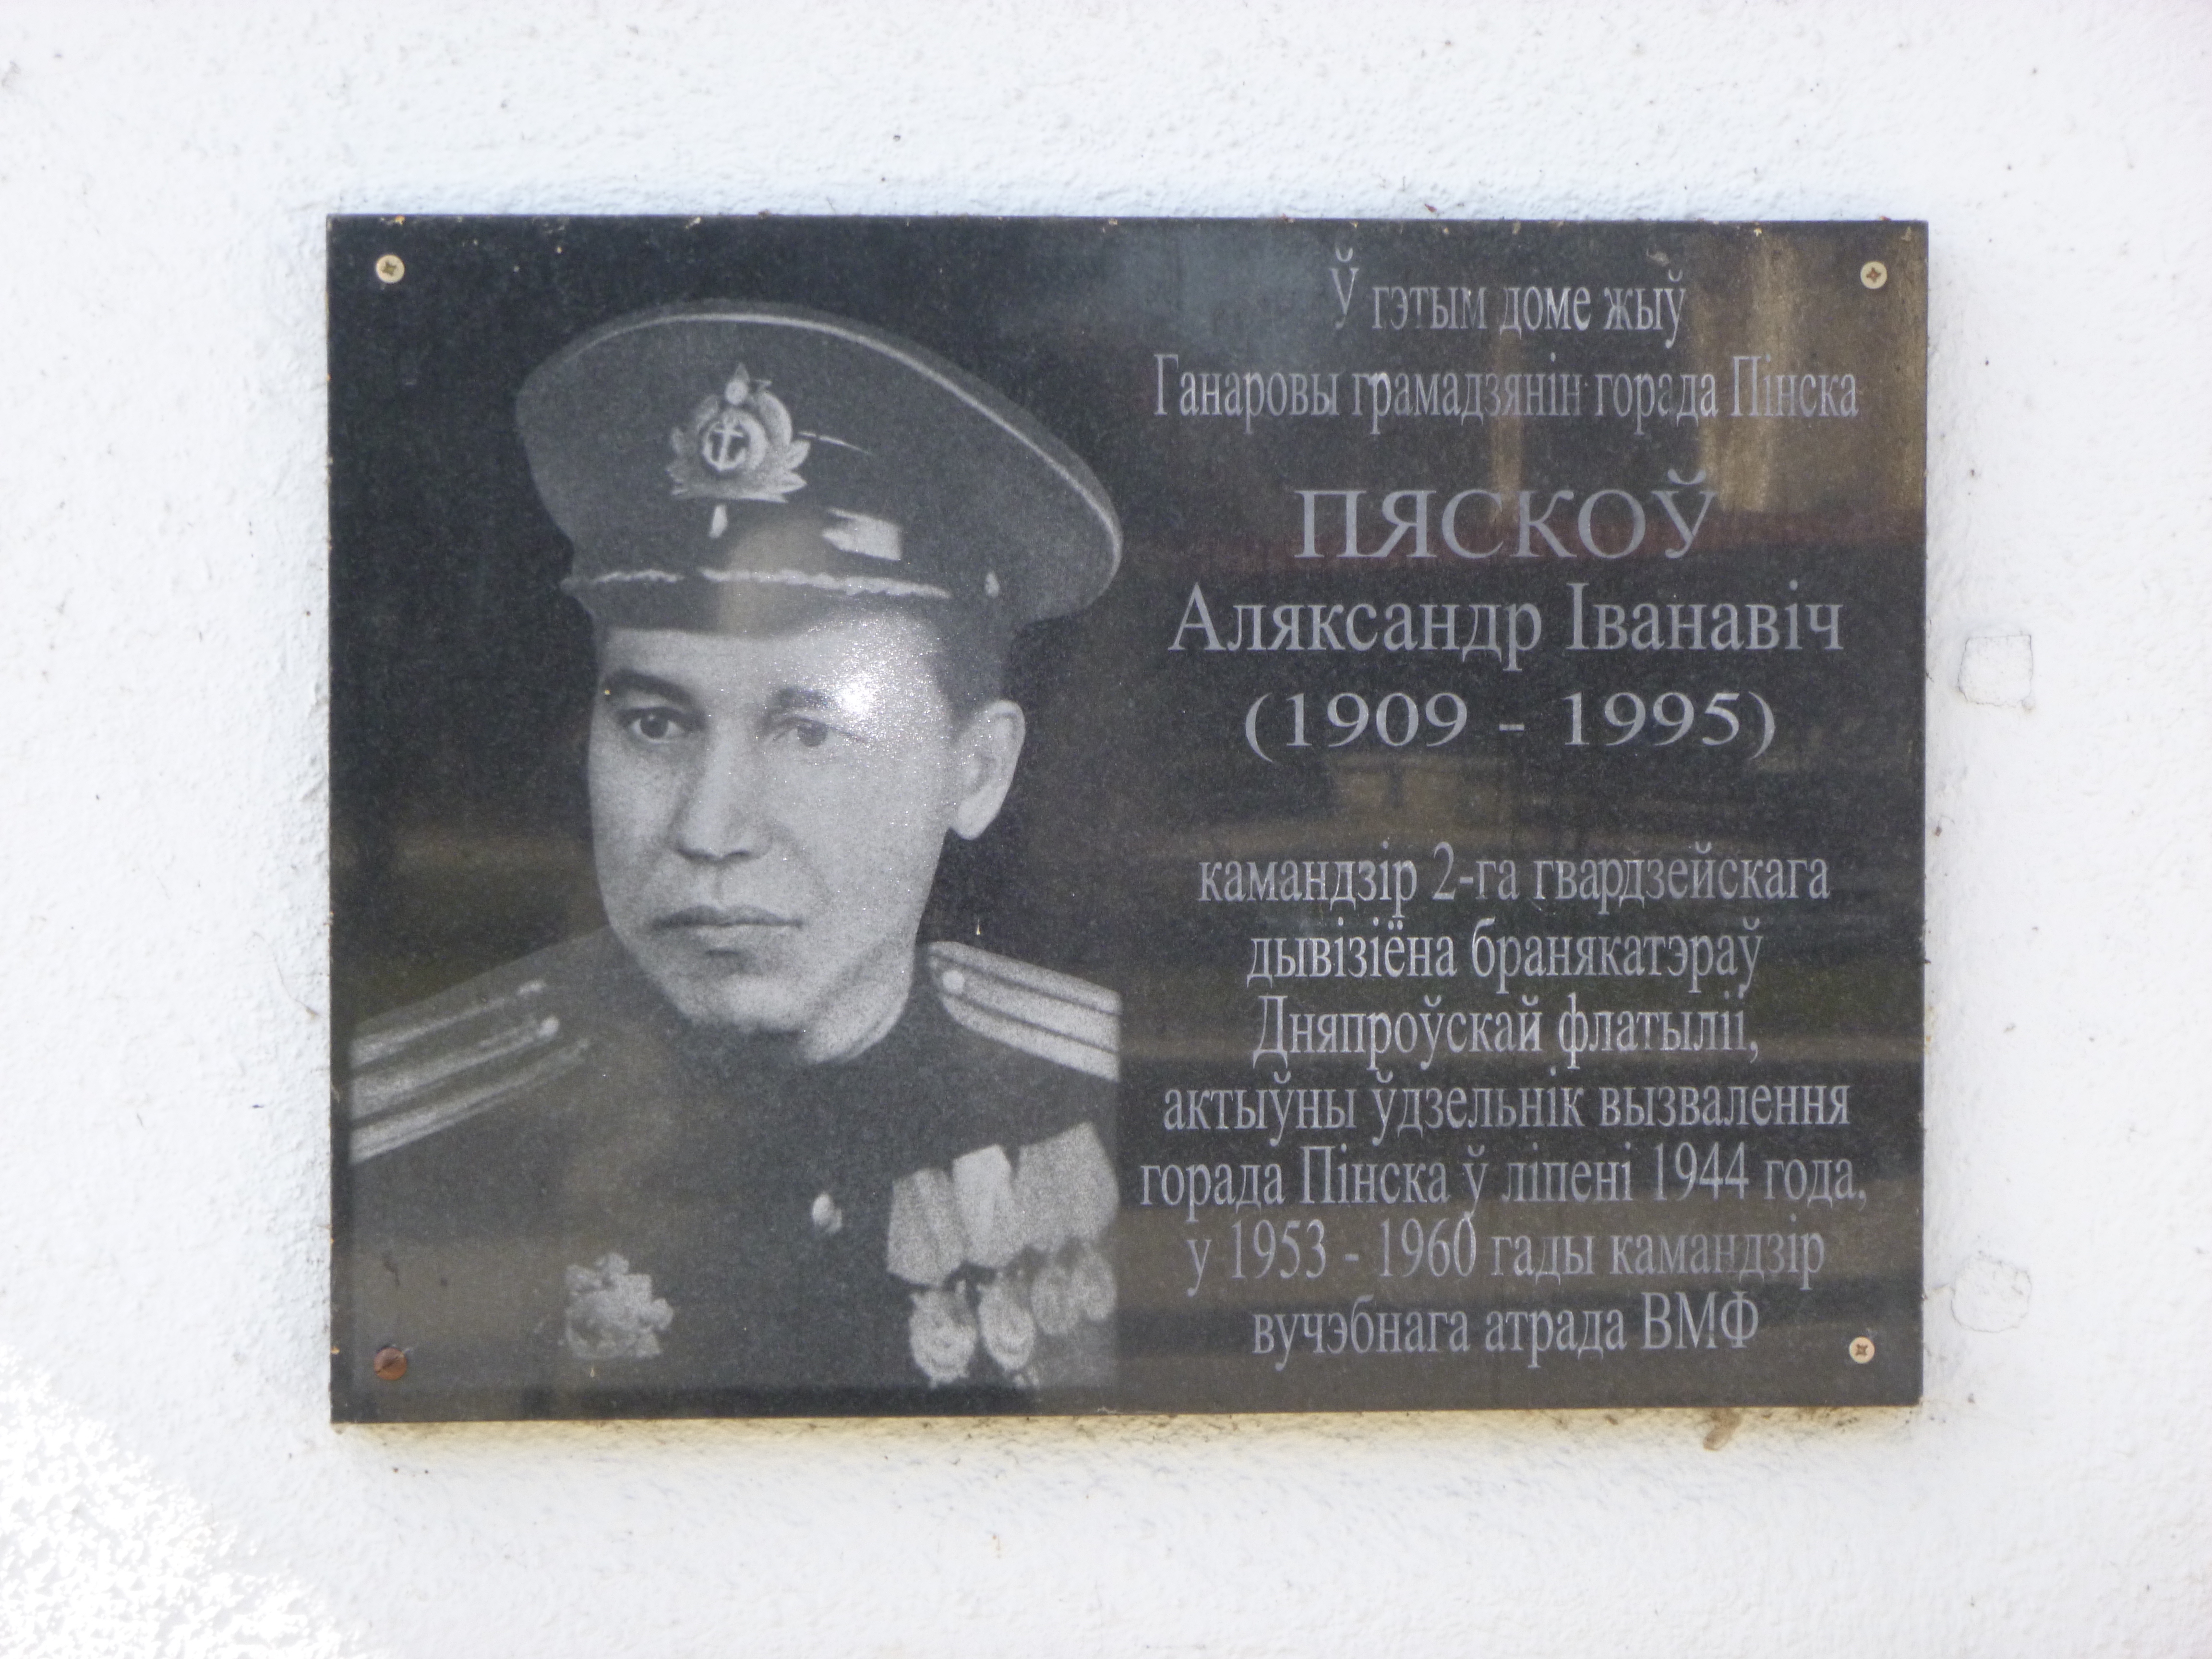 Мемориальная доска В честь А.И. Пескова, расположенная в г. Пинск,  район, Брестская область